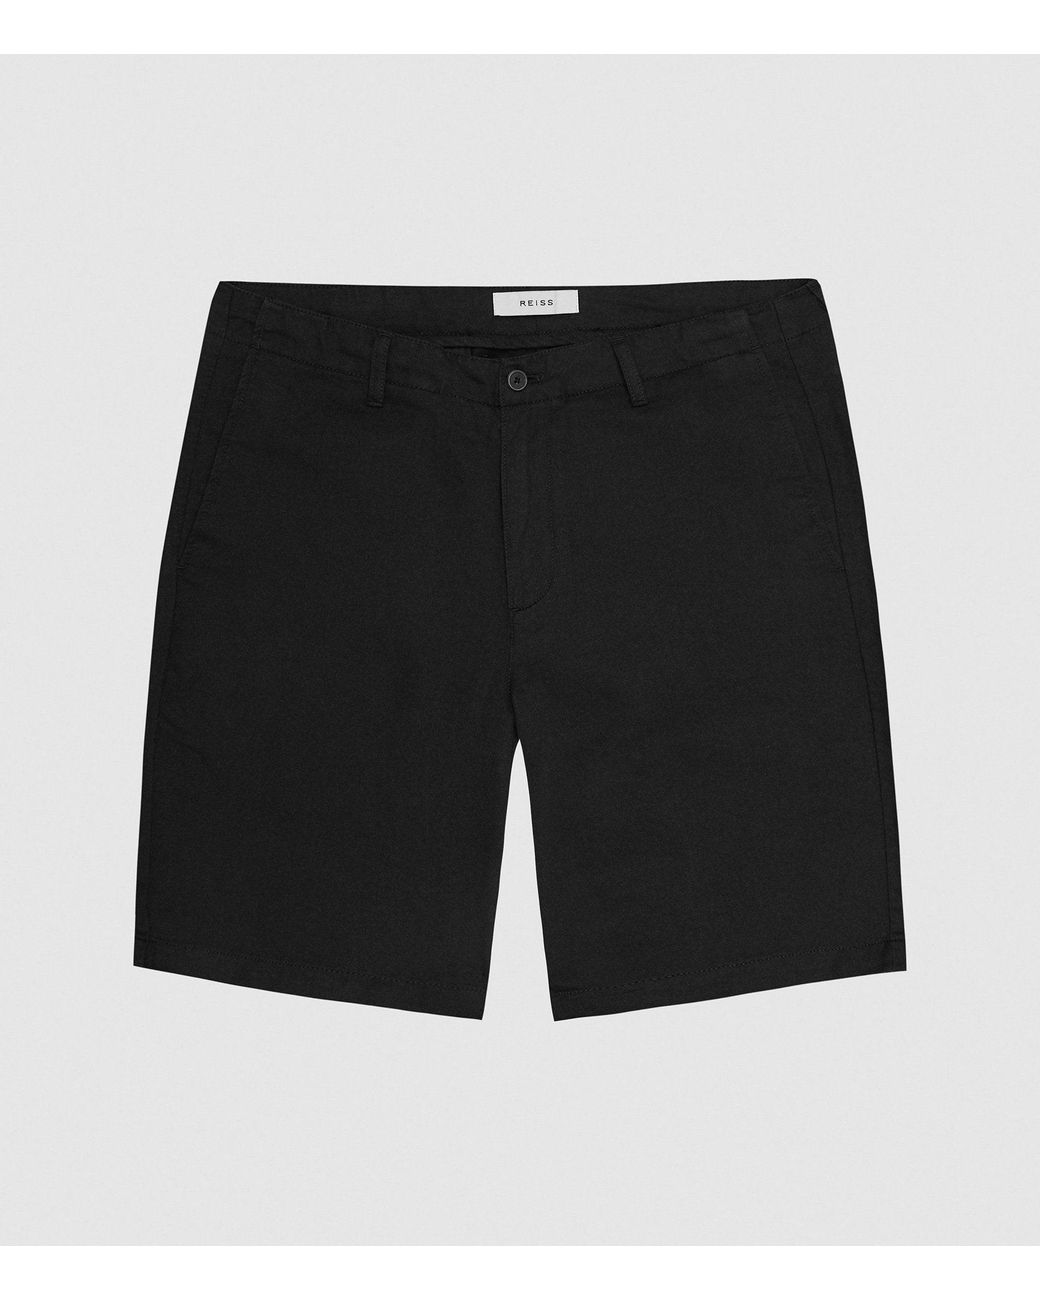 Reiss Cotton Linen Blend Shorts in Black for Men - Lyst